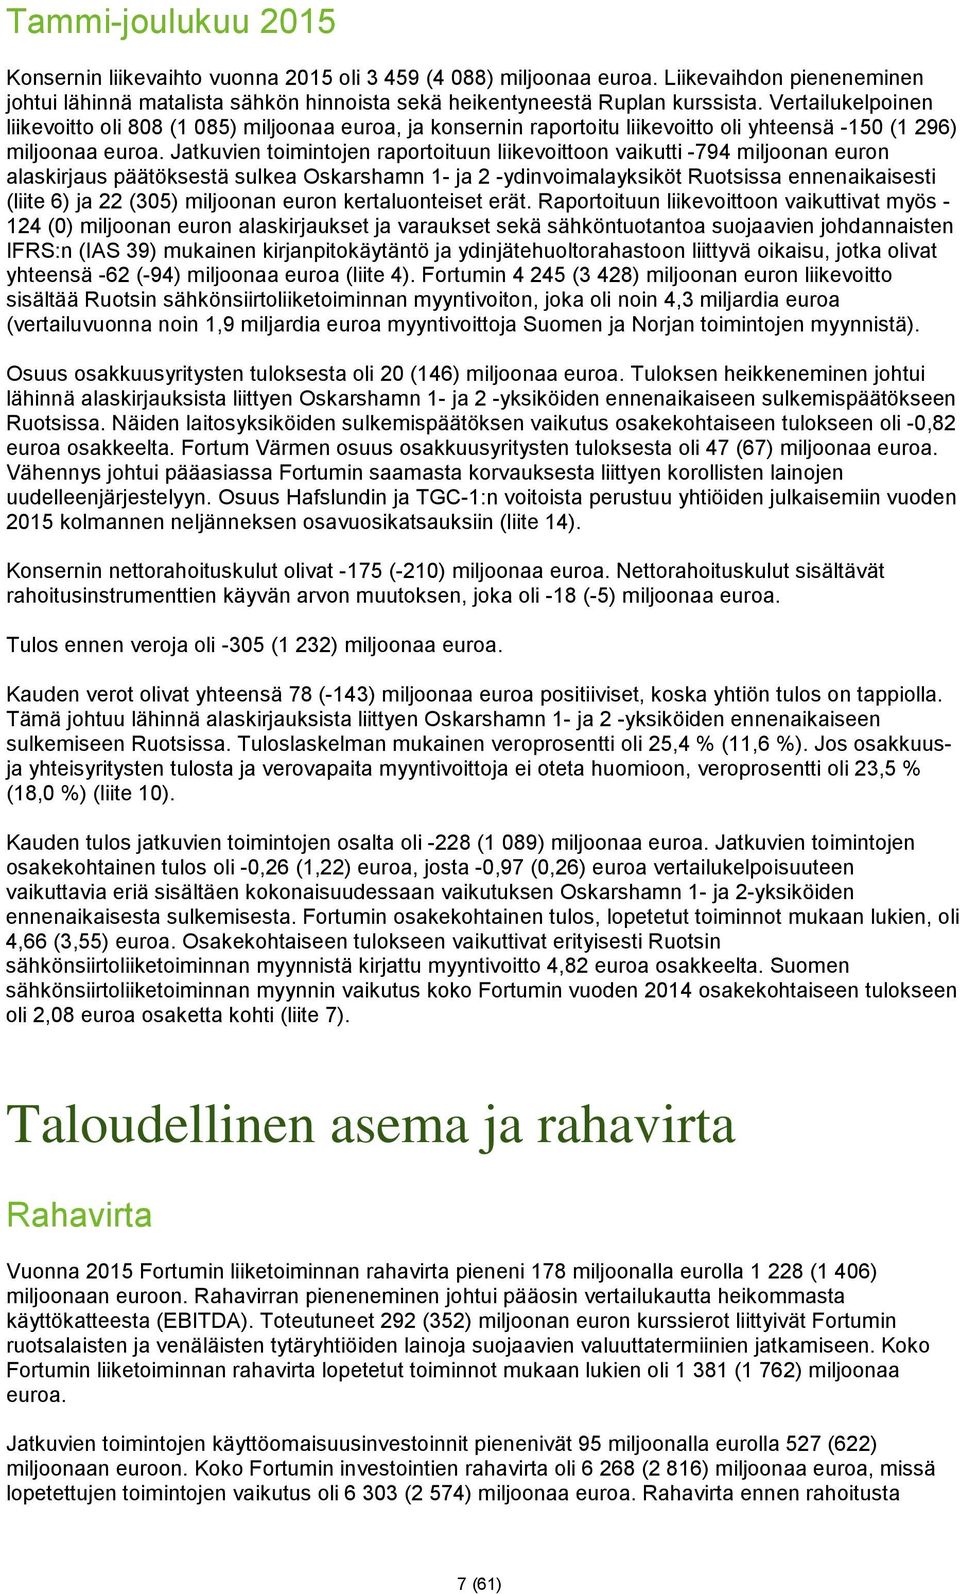 Jatkuvien toimintojen raportoituun liikevoittoon vaikutti -794 miljoonan euron alaskirjaus päätöksestä sulkea Oskarshamn 1- ja 2 -ydinvoimalayksiköt Ruotsissa ennenaikaisesti (liite 6) ja 22 (305)